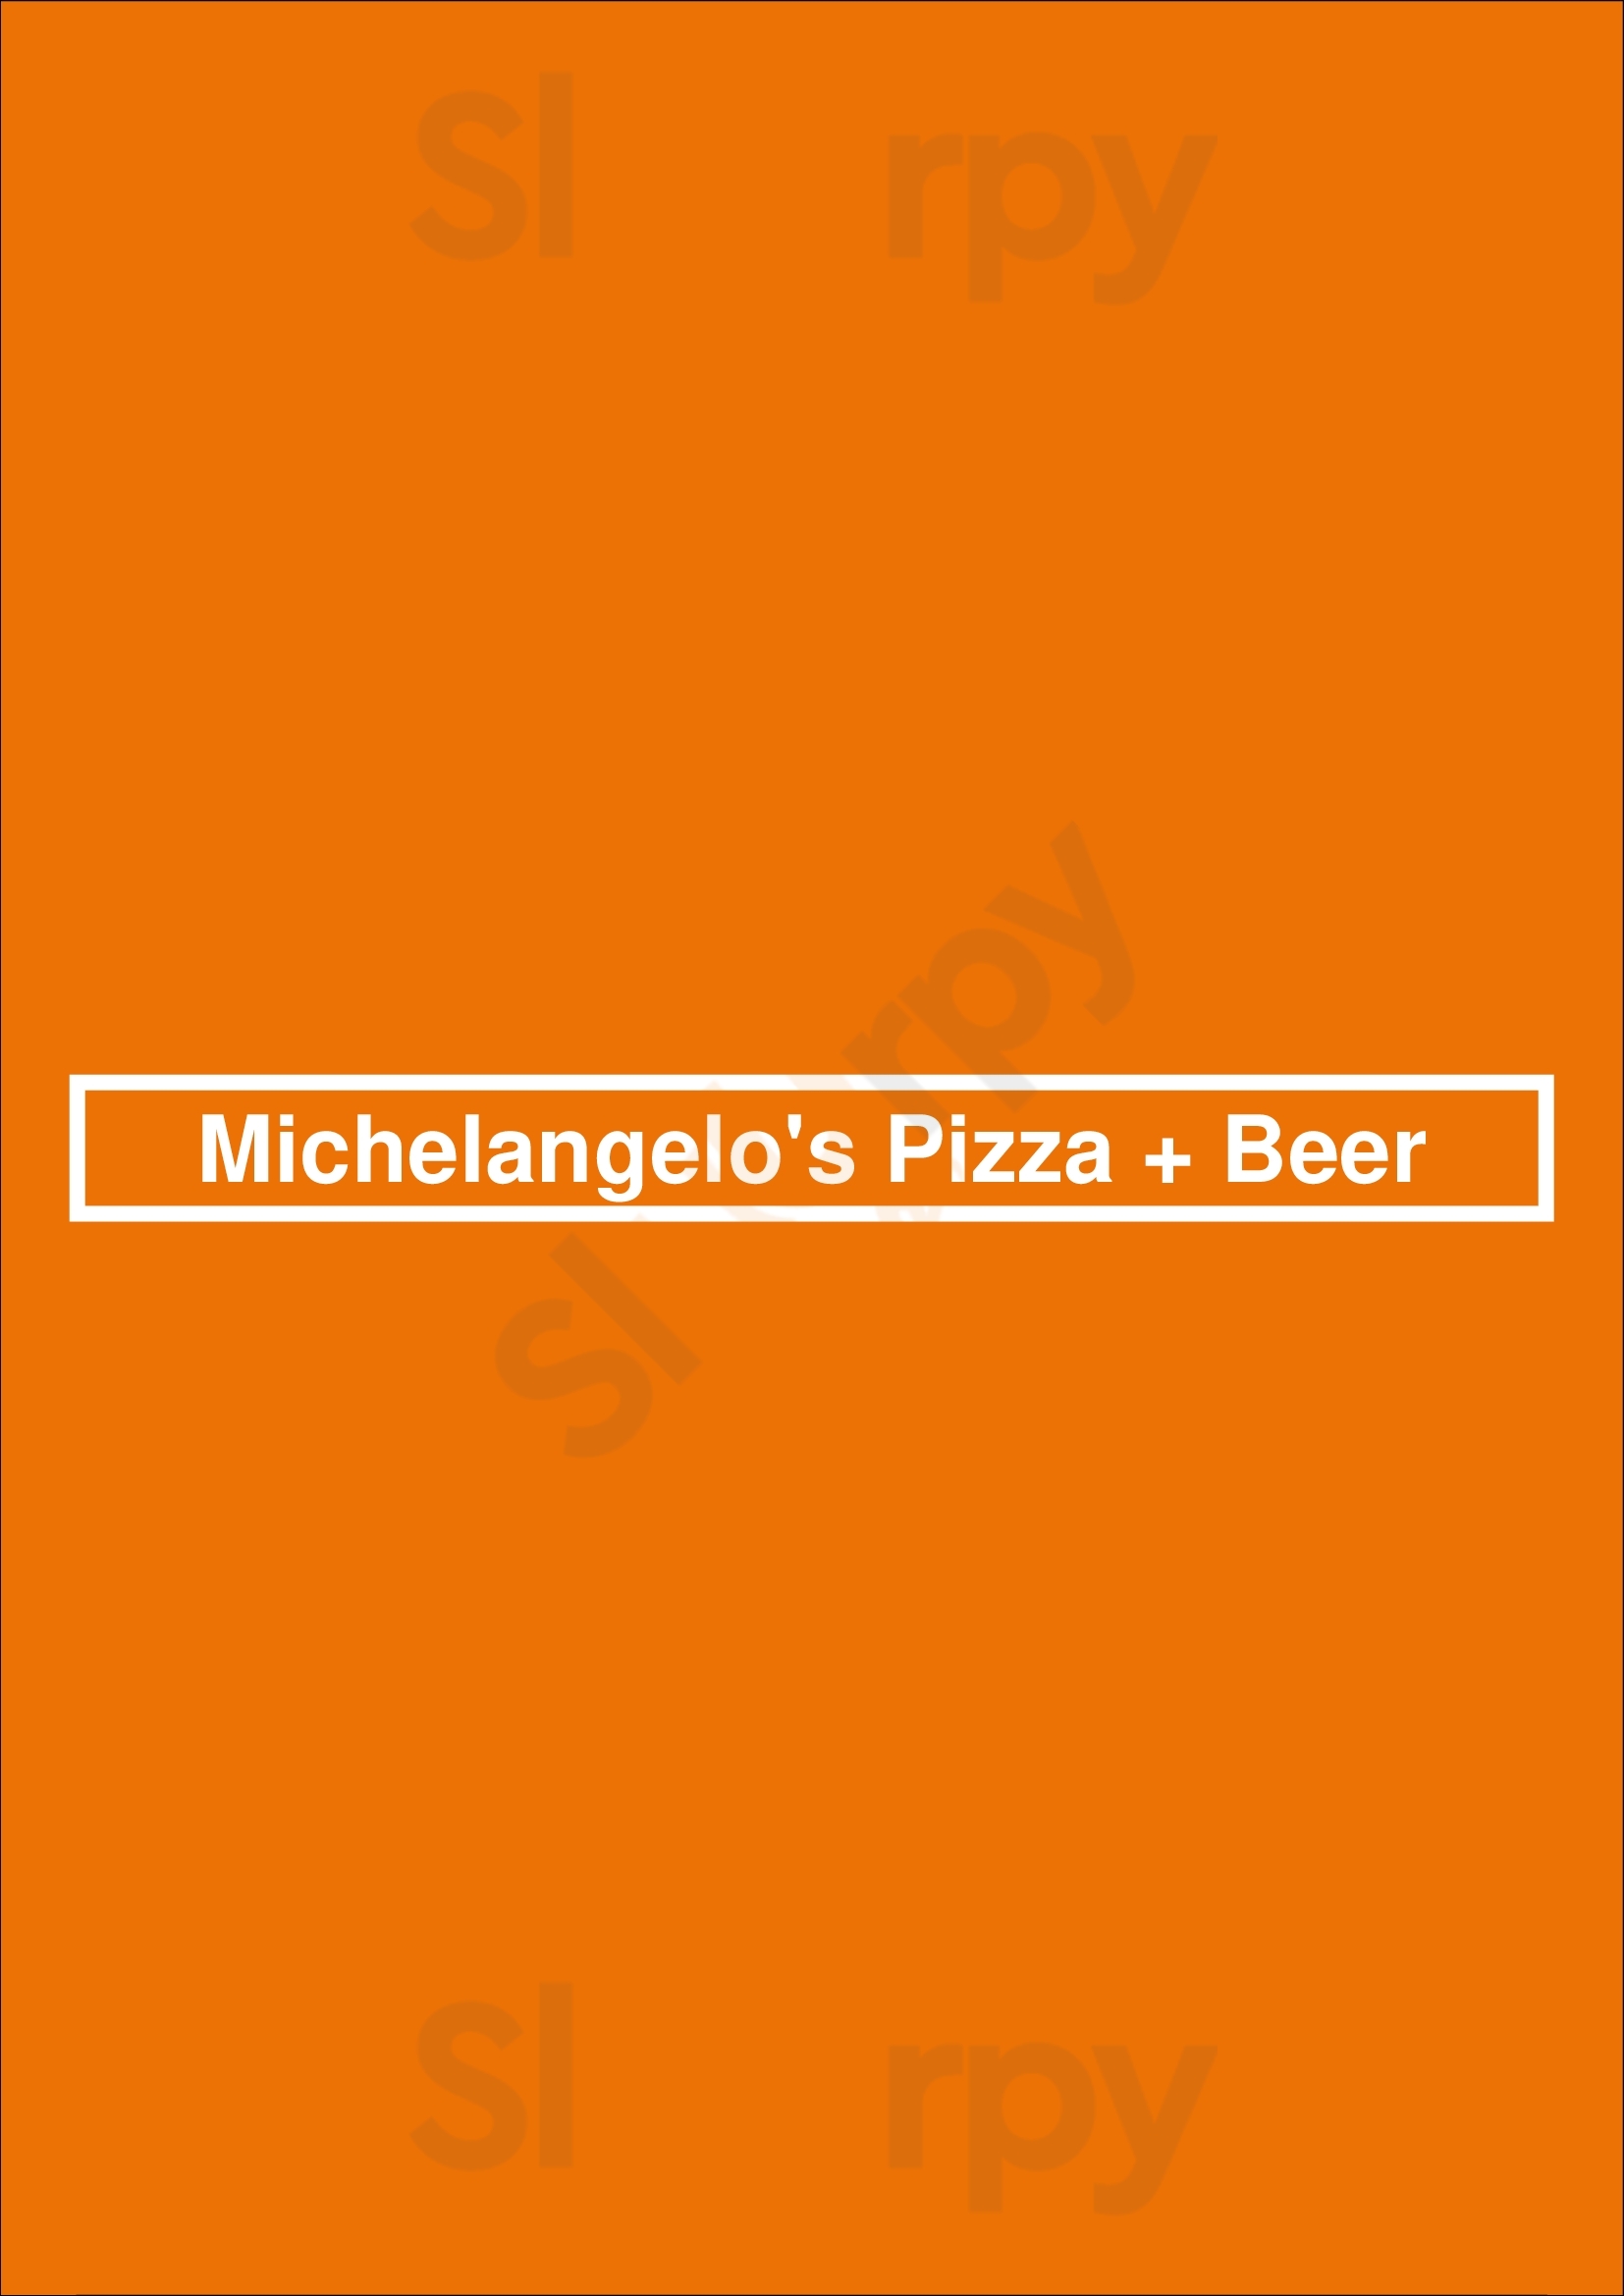 Michelangelo's Pizza + Beer Fullerton Menu - 1